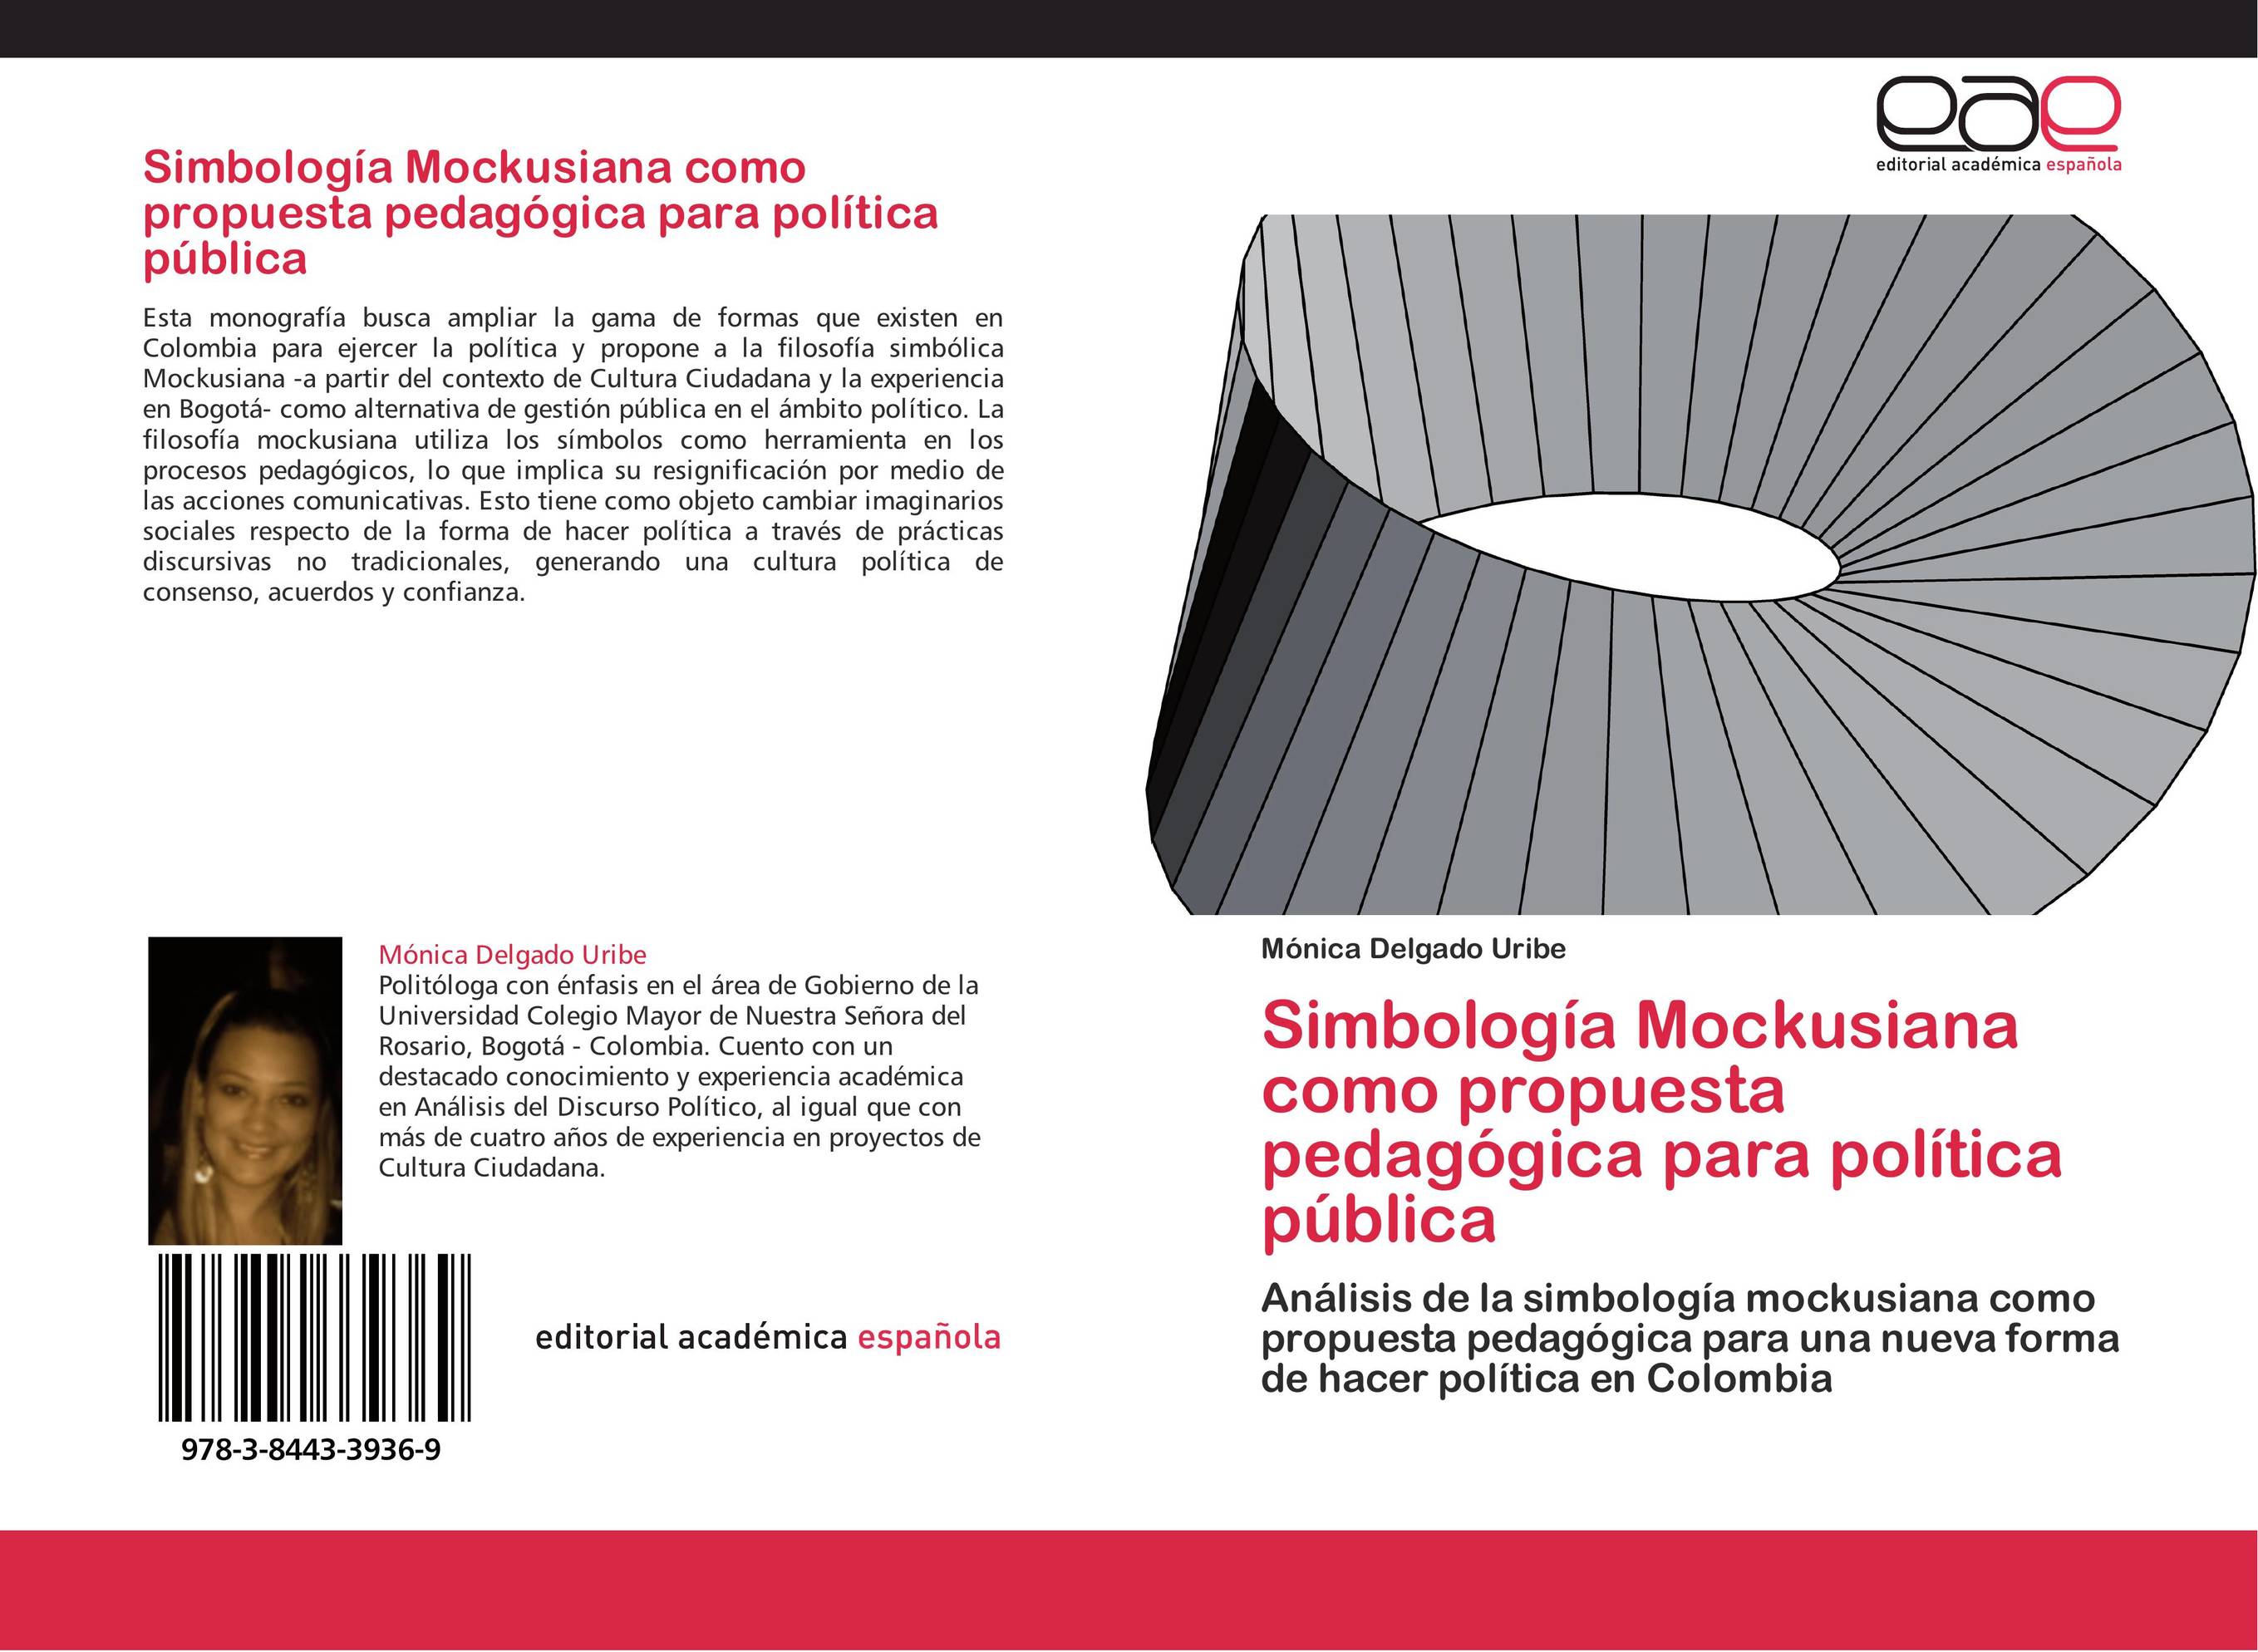 Simbología Mockusiana como propuesta pedagógica para política pública